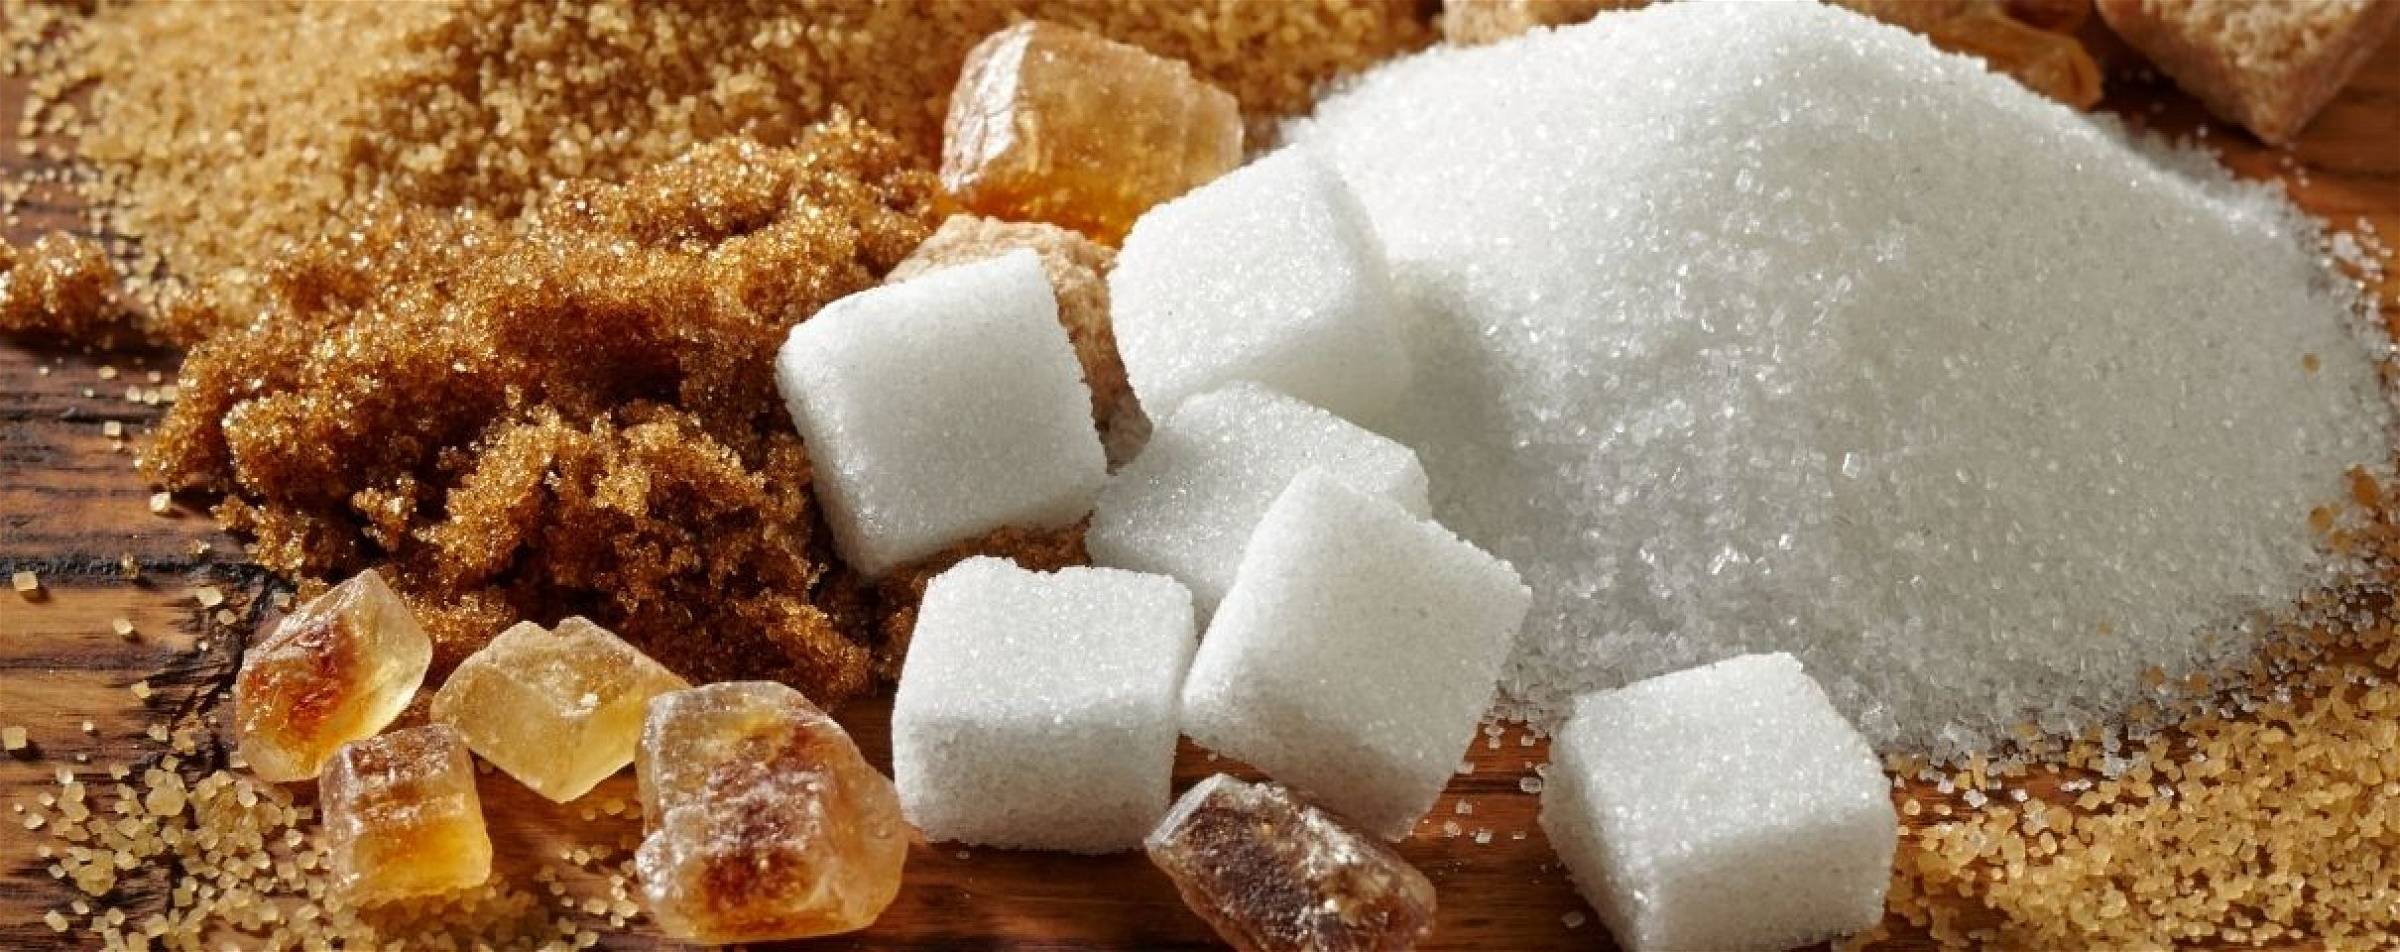 suikervervanger-zoetstof-suiker